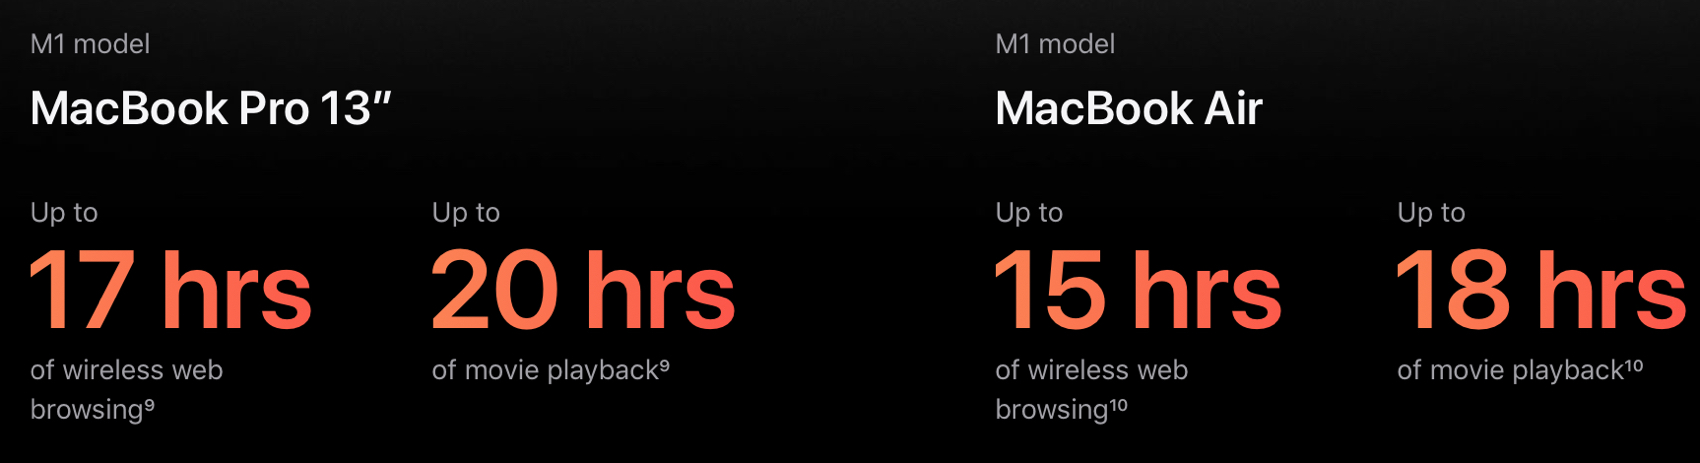 Batterie per Mac modello M1